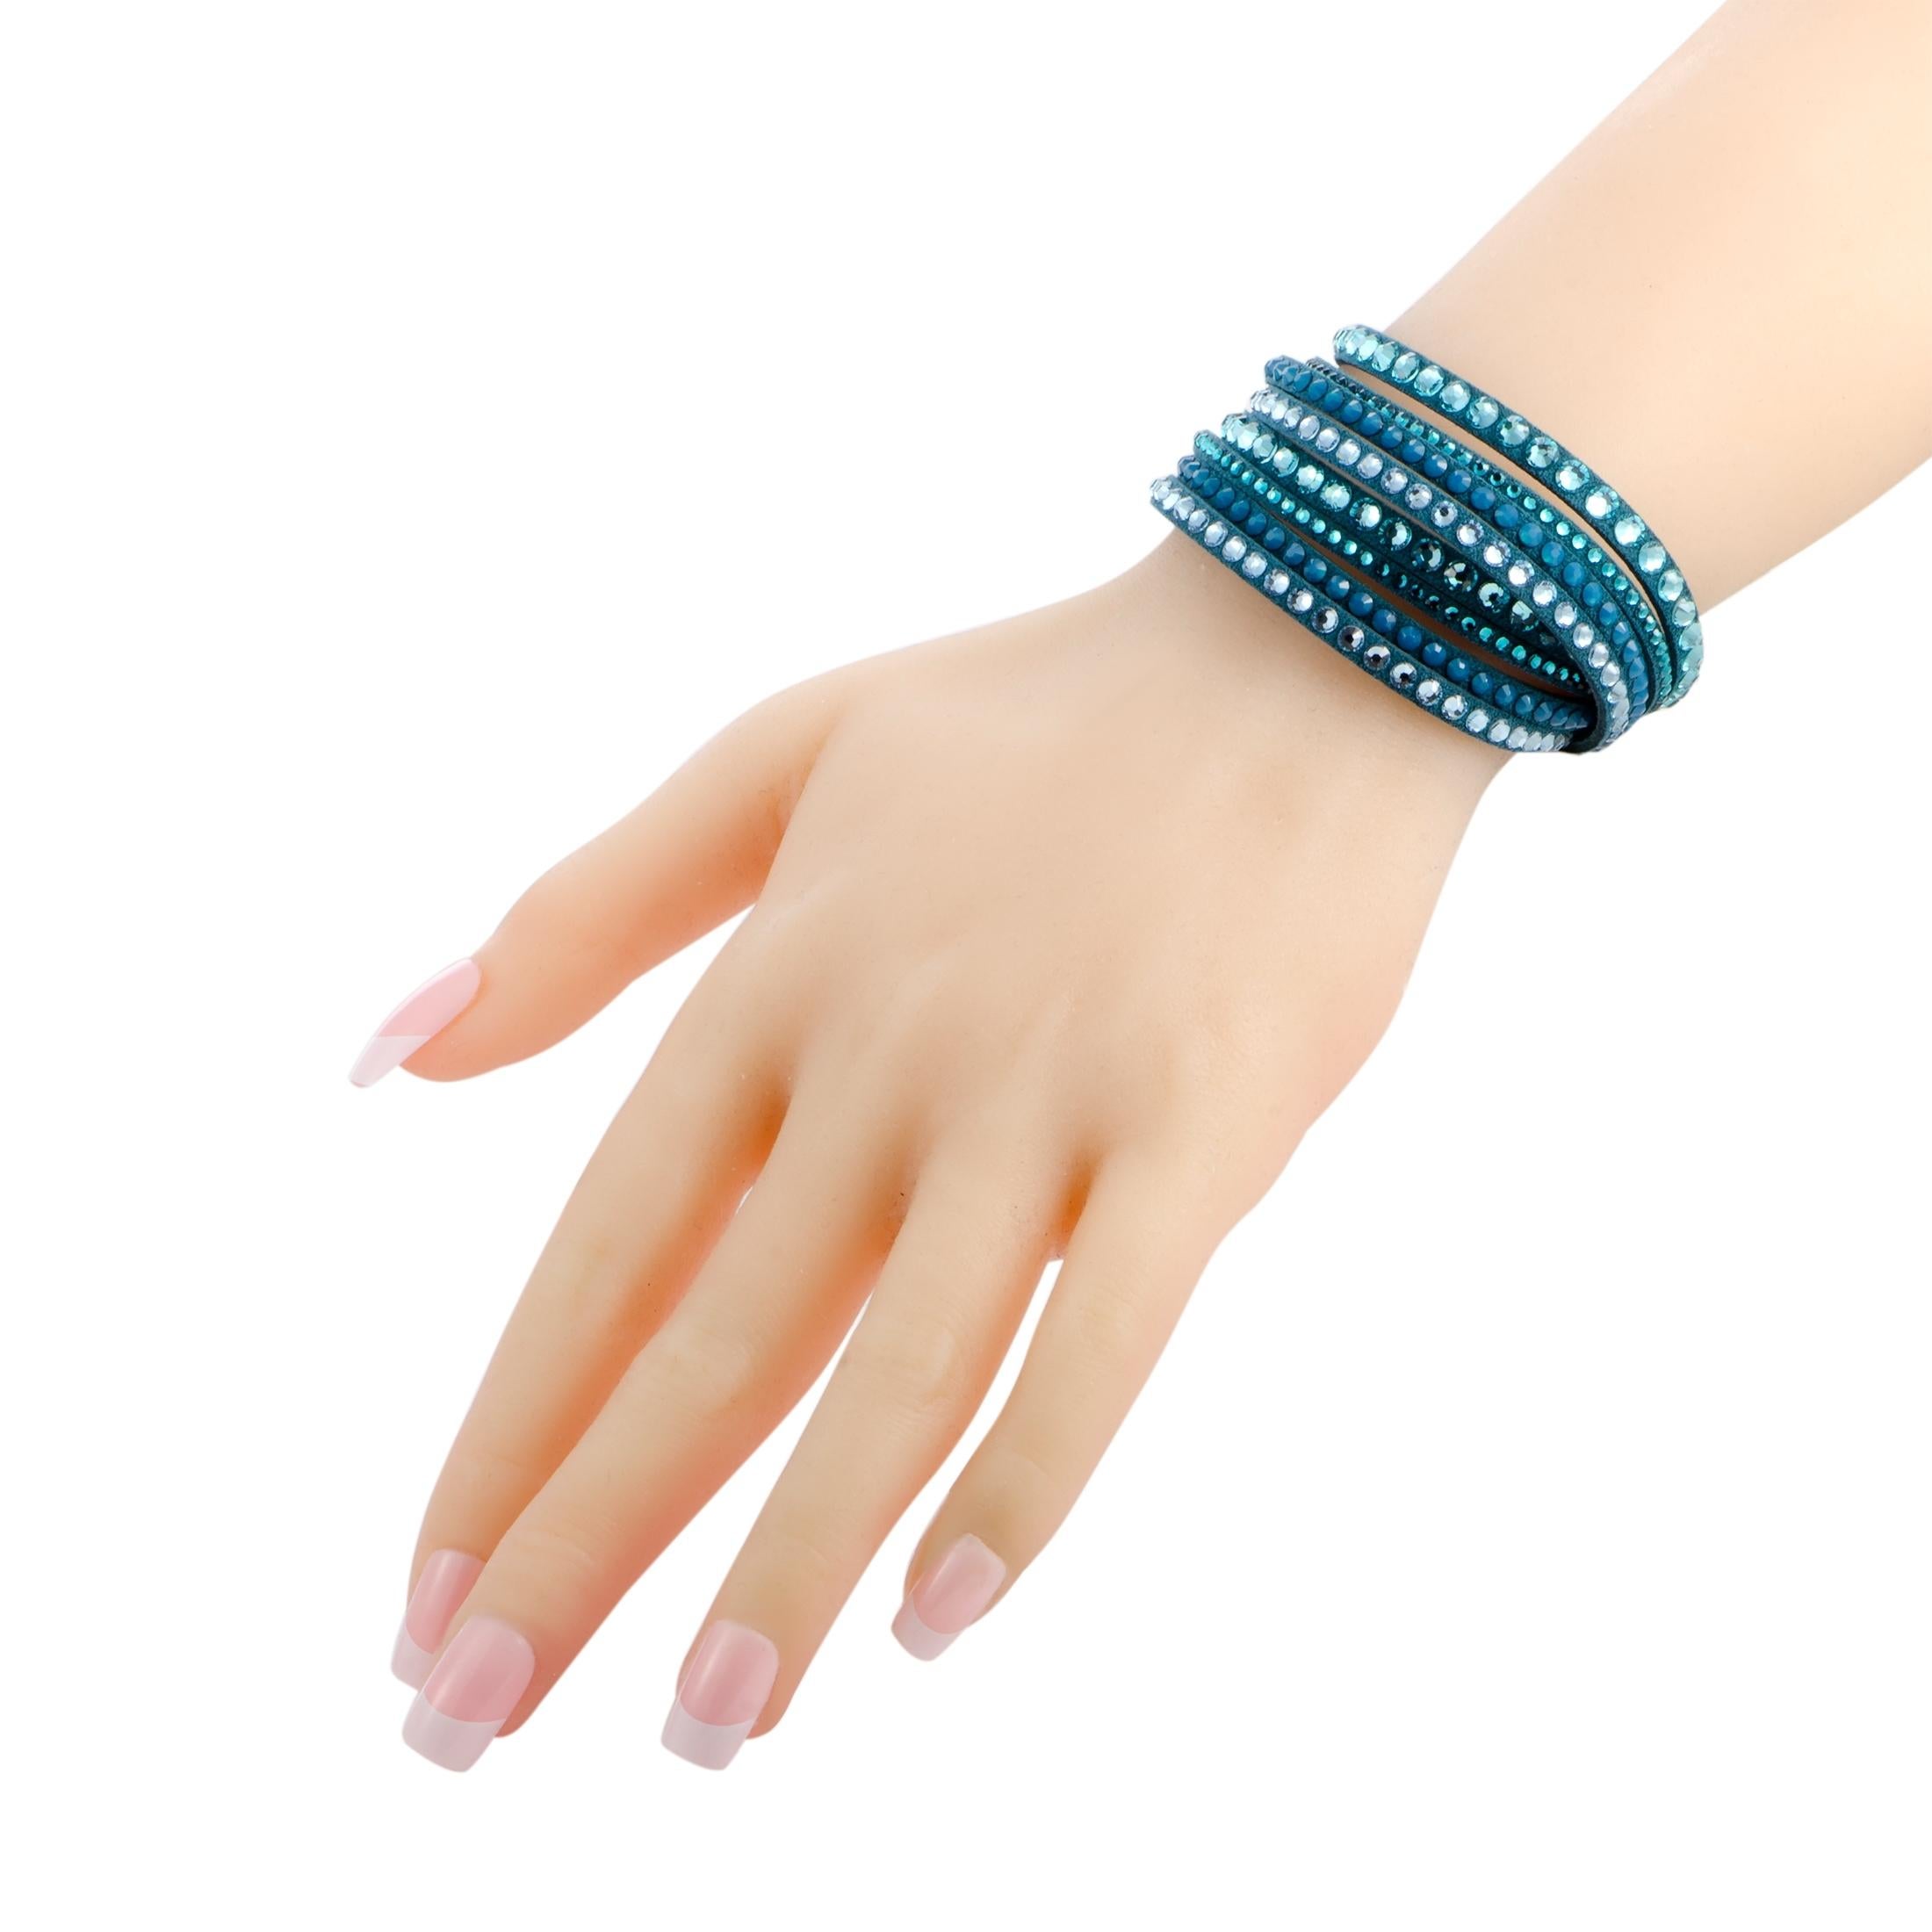 Verleihen Sie Ihren Outfits einen atemberaubenden modischen Touch mit diesem außergewöhnlich stilisierten Armband, das sich in auffälligem Blau präsentiert und mit einer Fülle von verlockenden Kristallen verziert ist. Das Armband ist ein